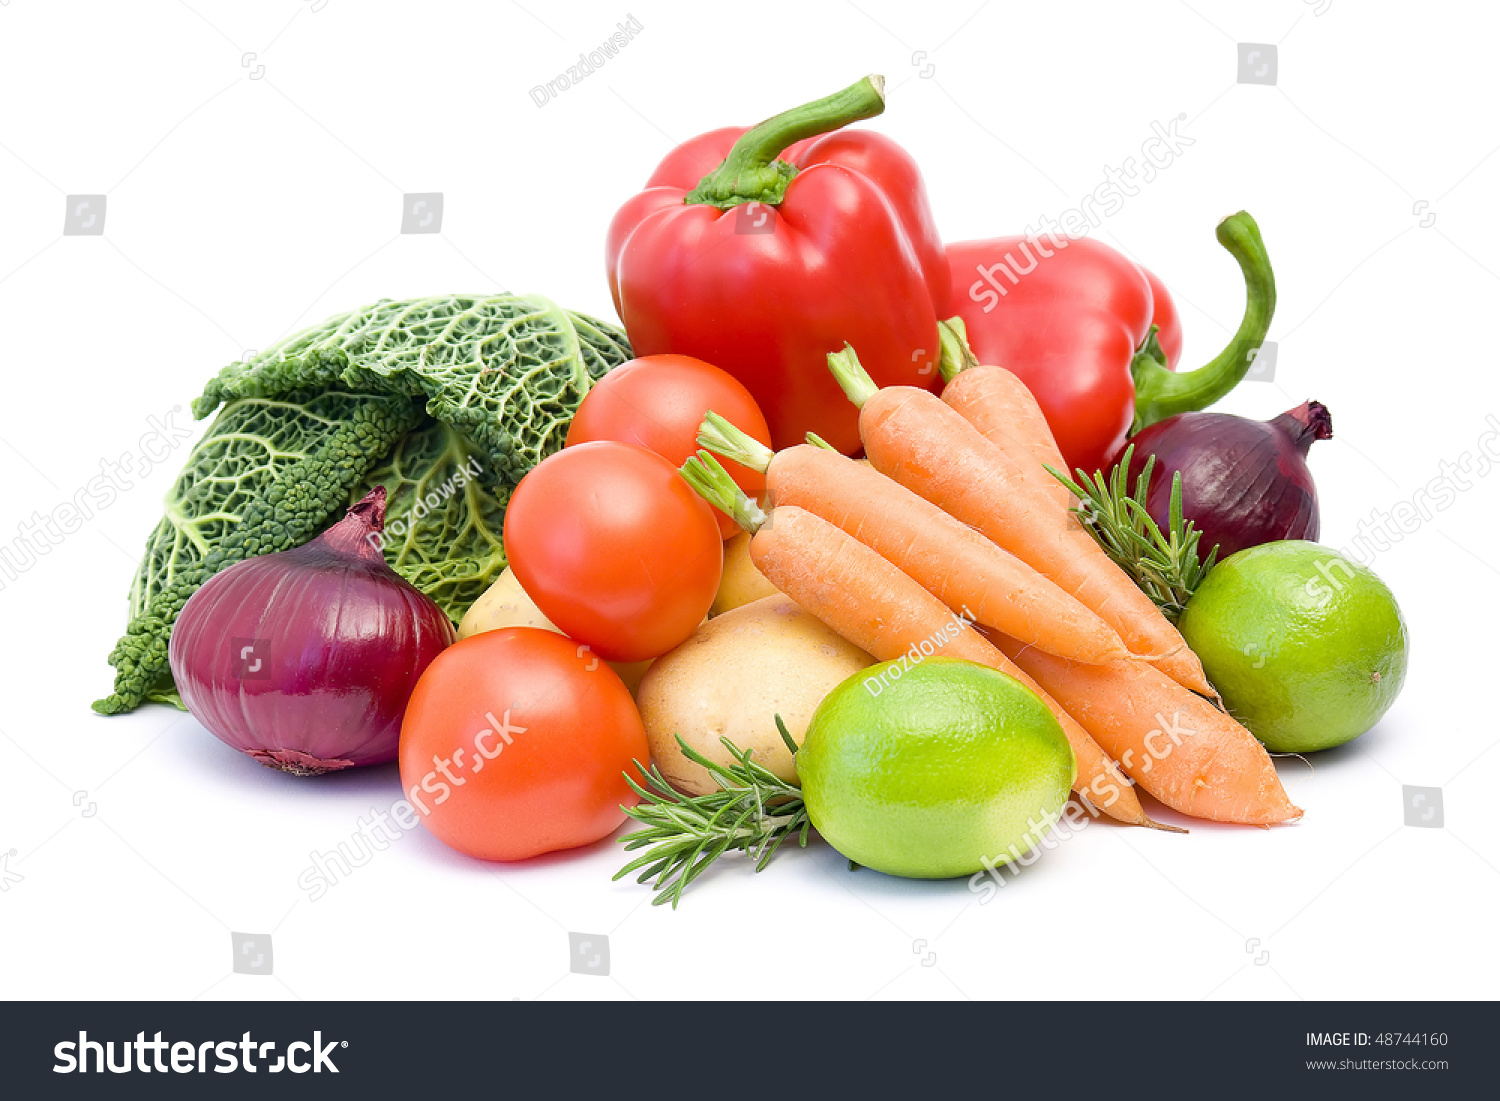 Fresh Vegetables Stock Photo 48744160 - Shutterstock